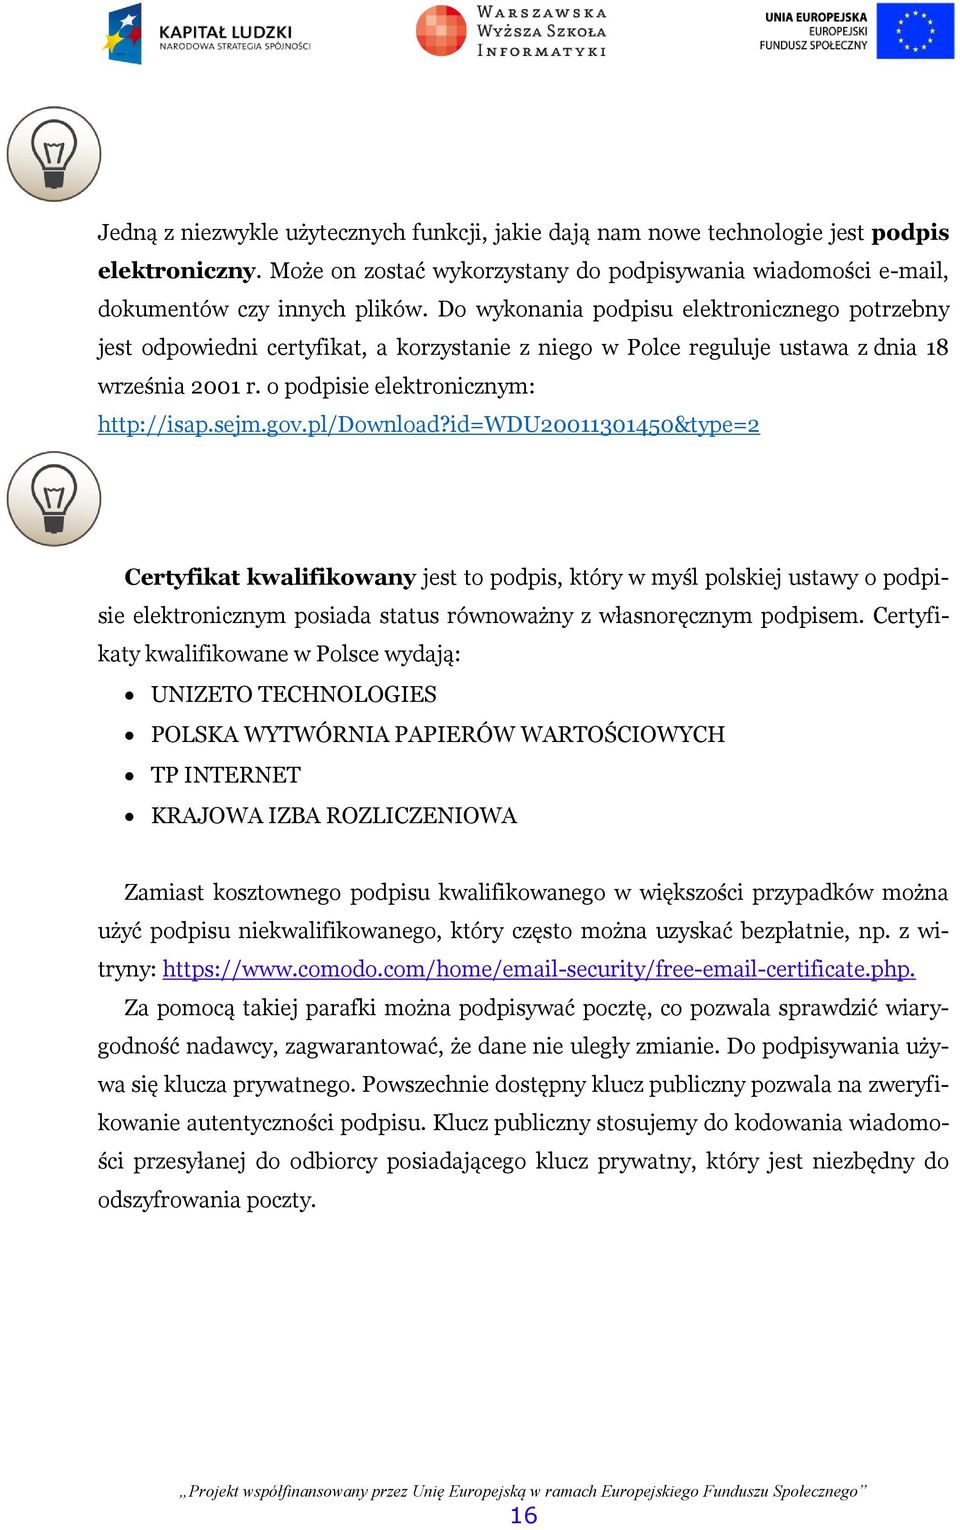 pl/download?id=wdu20011301450&type=2 Certyfikat kwalifikowany jest to podpis, który w myśl polskiej ustawy o podpisie elektronicznym posiada status równoważny z własnoręcznym podpisem.